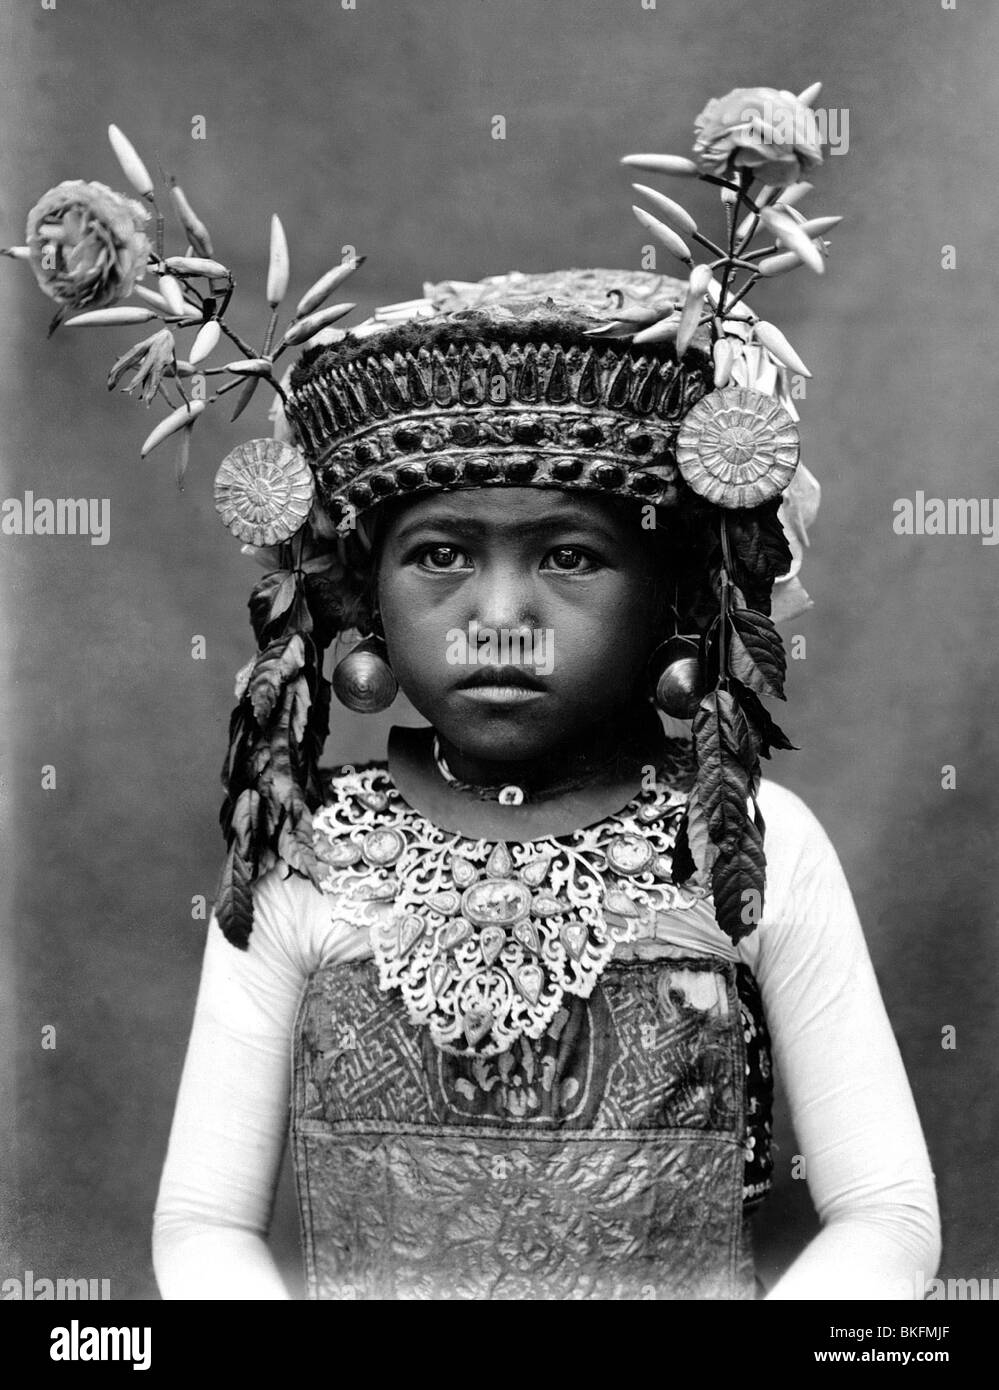 Geografia / viaggio, Indonesia, Bali, la gente, ragazza giovane nei vestiti del tempio, 1930s, , Foto Stock